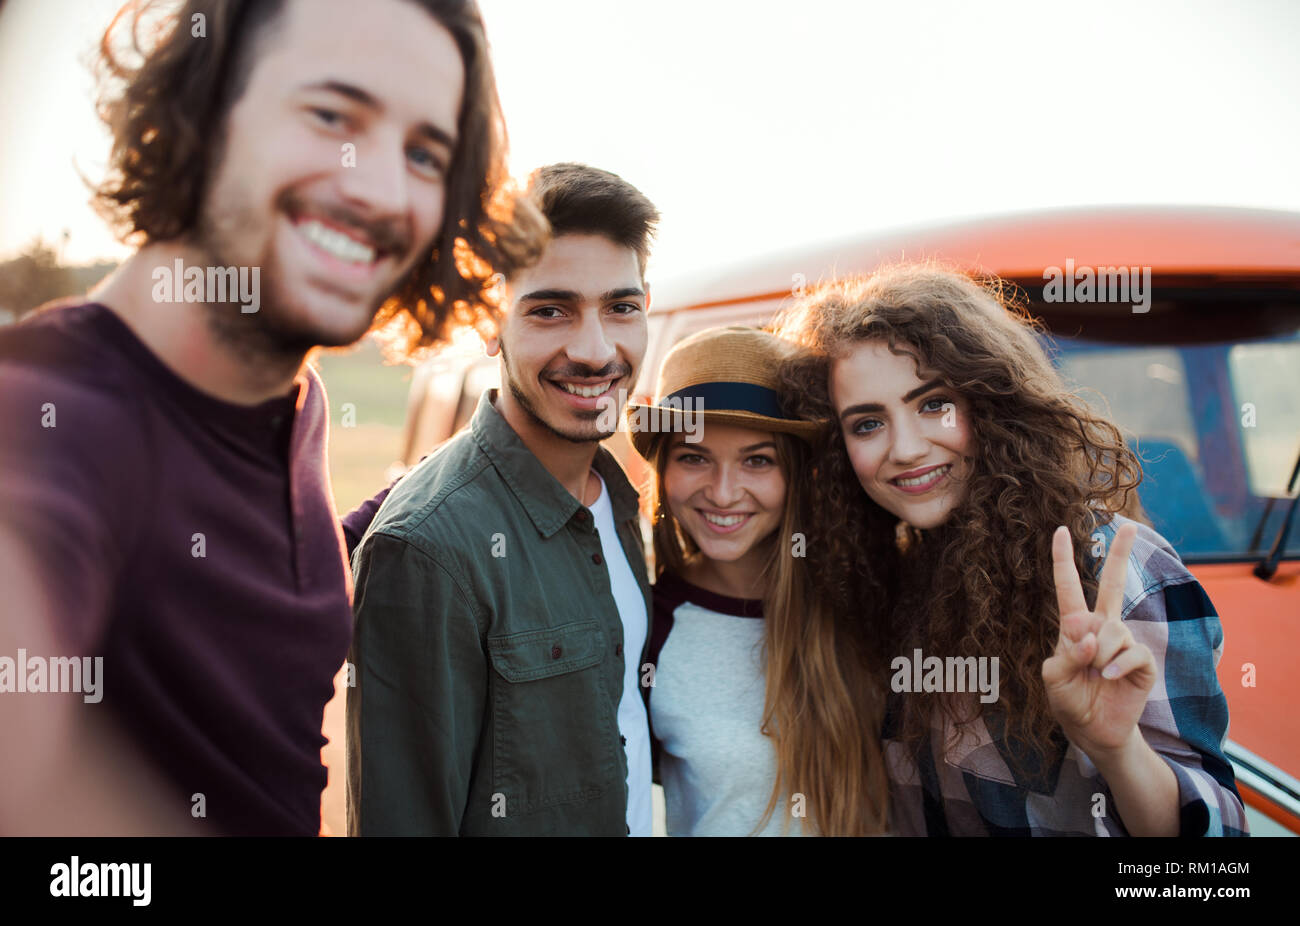 Eine Gruppe junger Freunde auf einem Roadtrip durch Landschaft, wobei selfie. Stockfoto